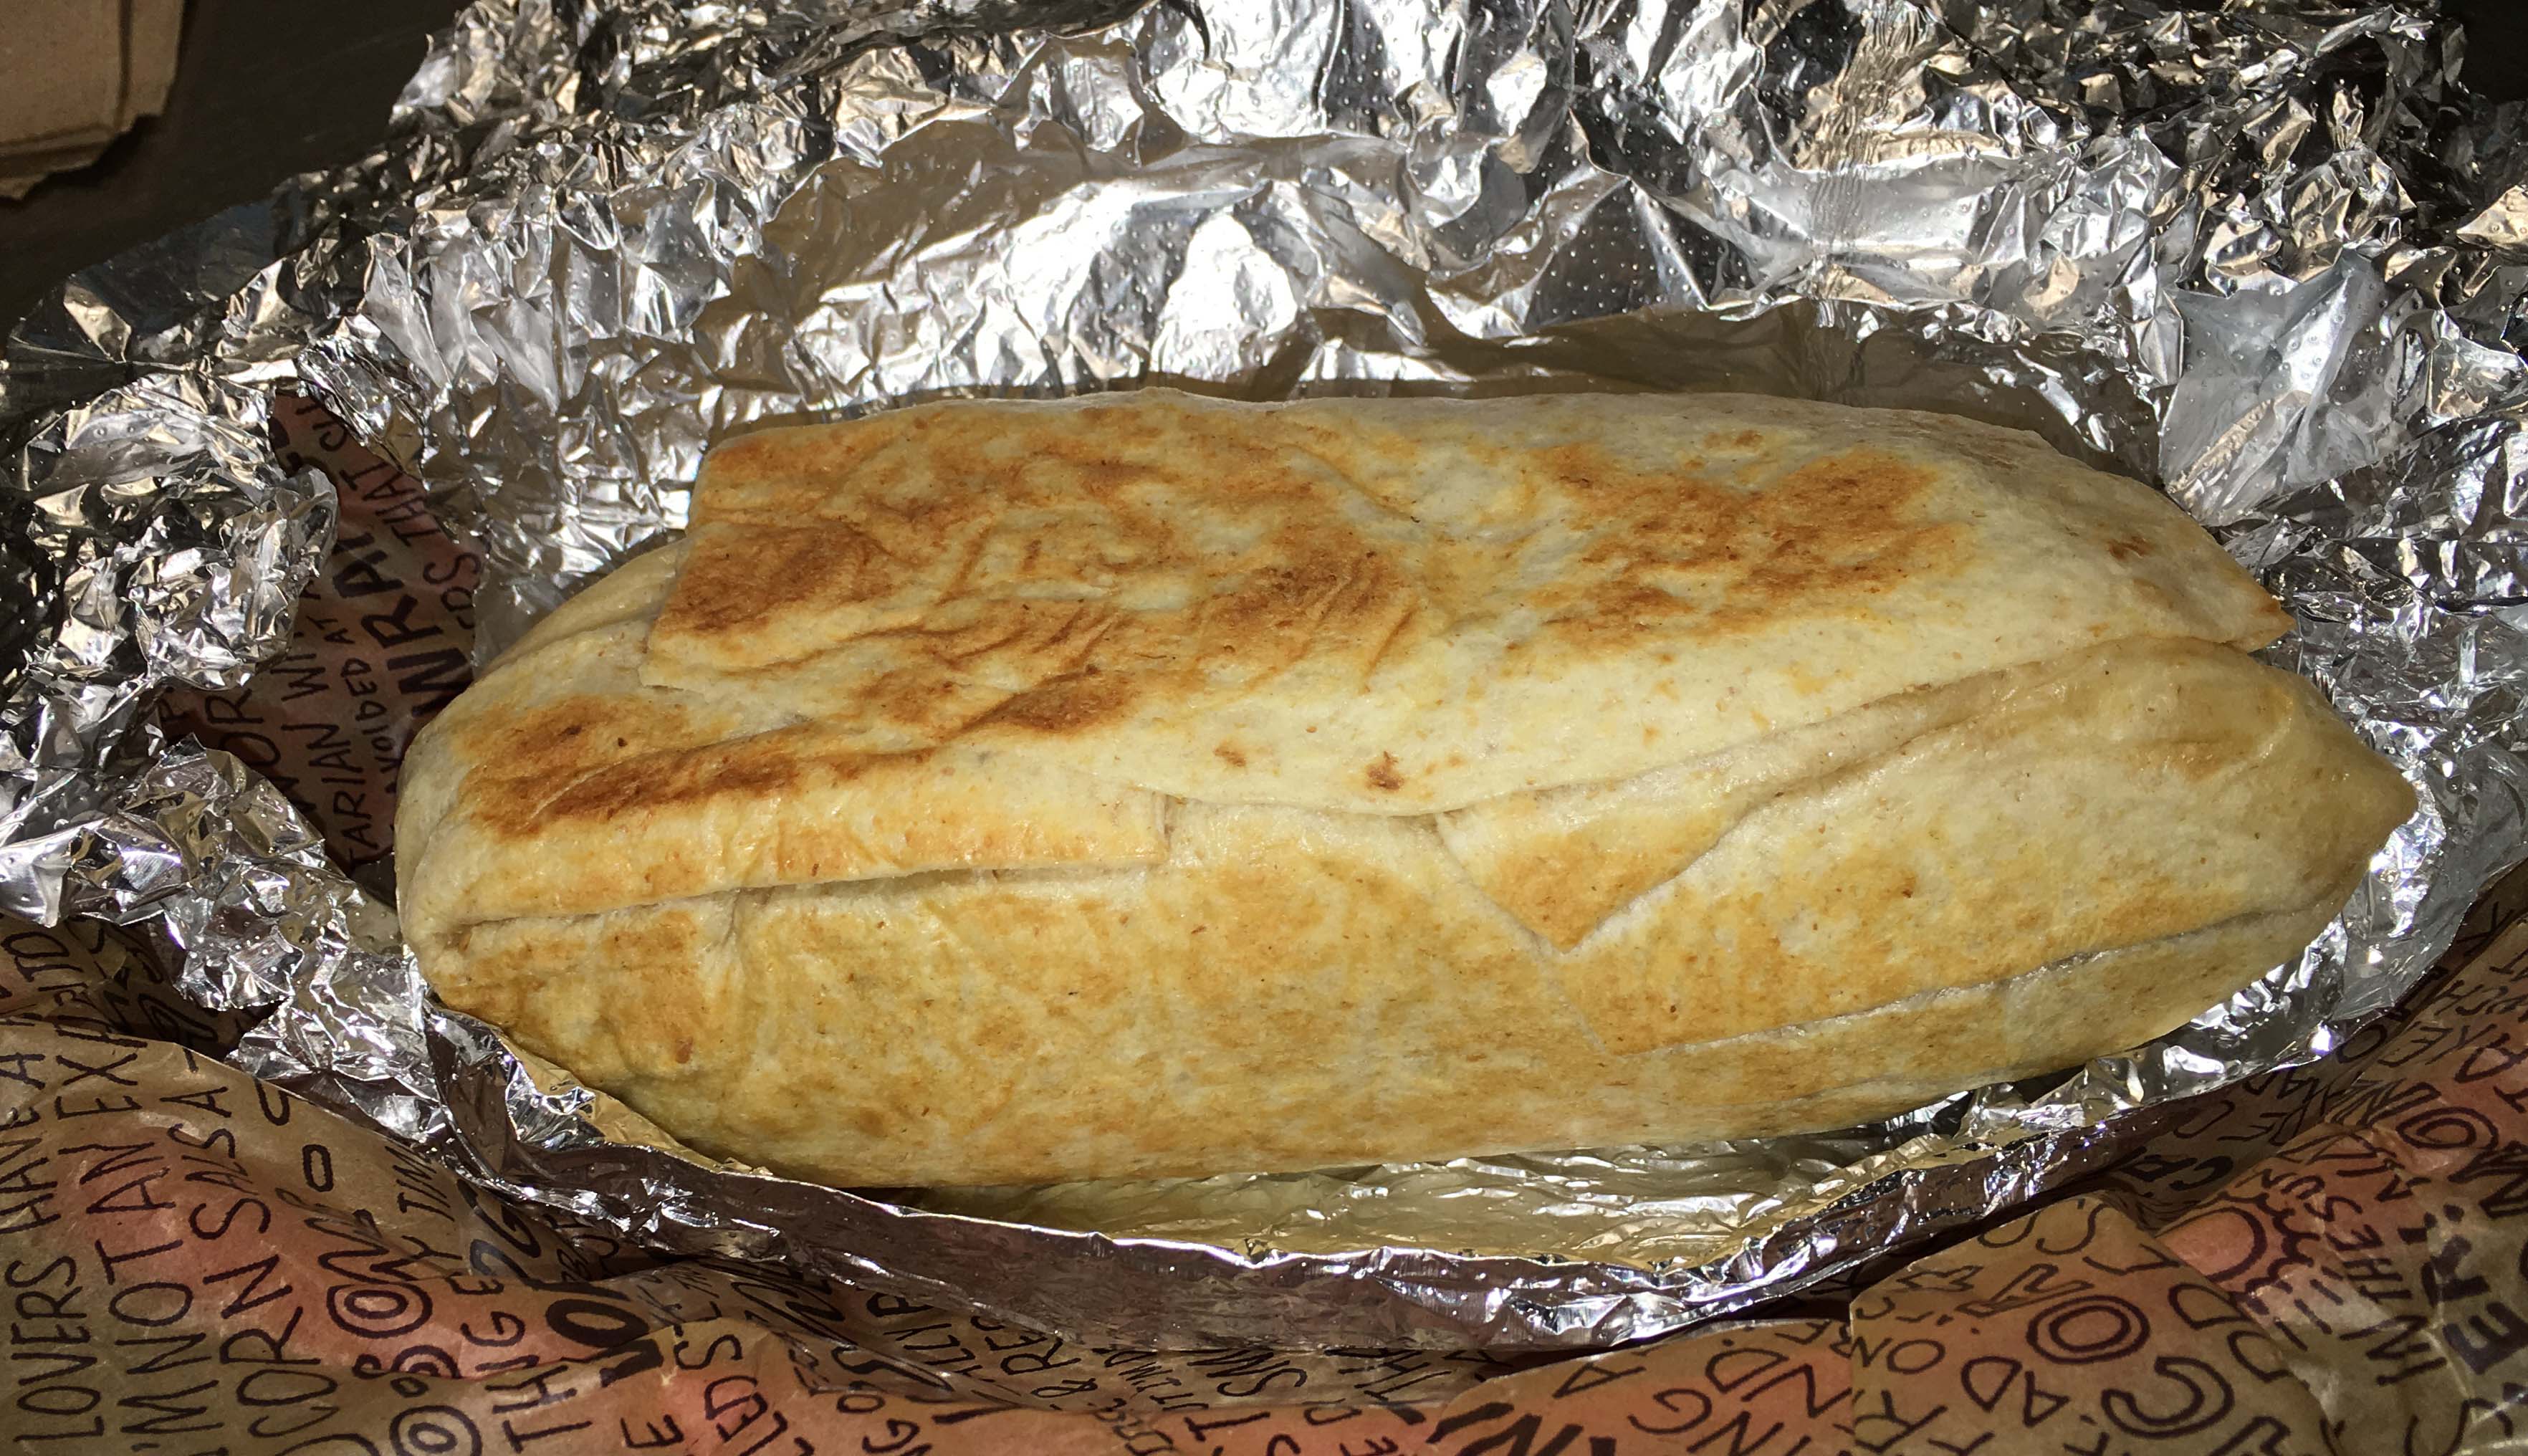 toasted Chipotle burrito